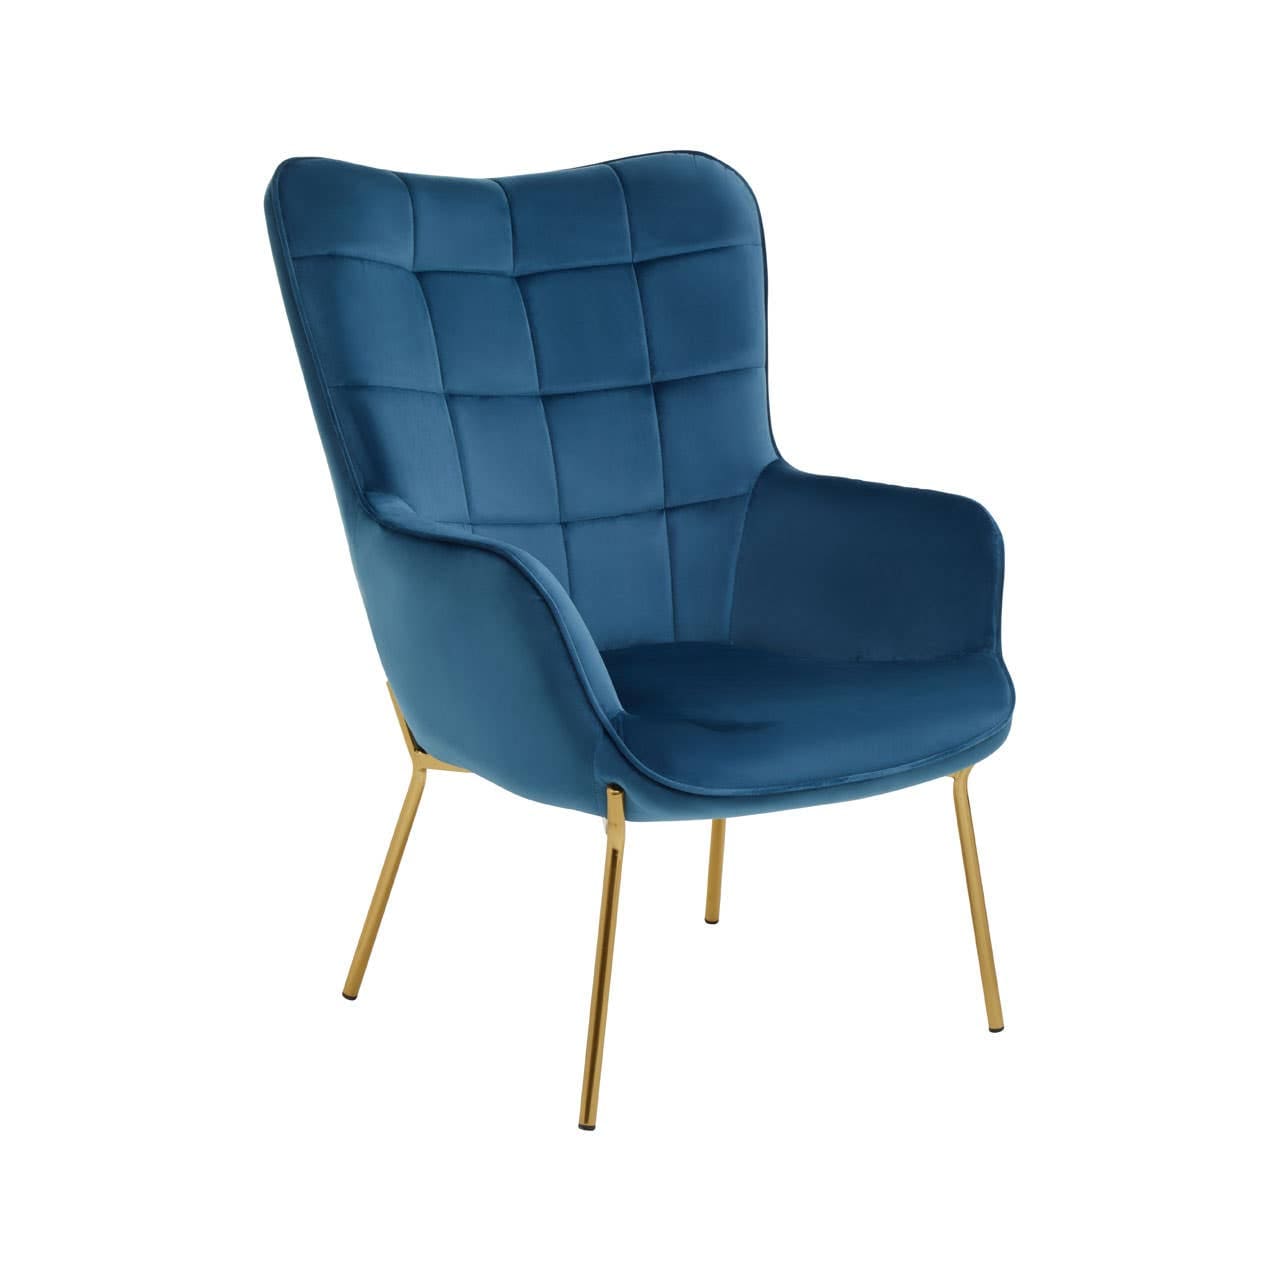 Noosa & Co. Living Stockholm Blue Velvet Chair House of Isabella UK